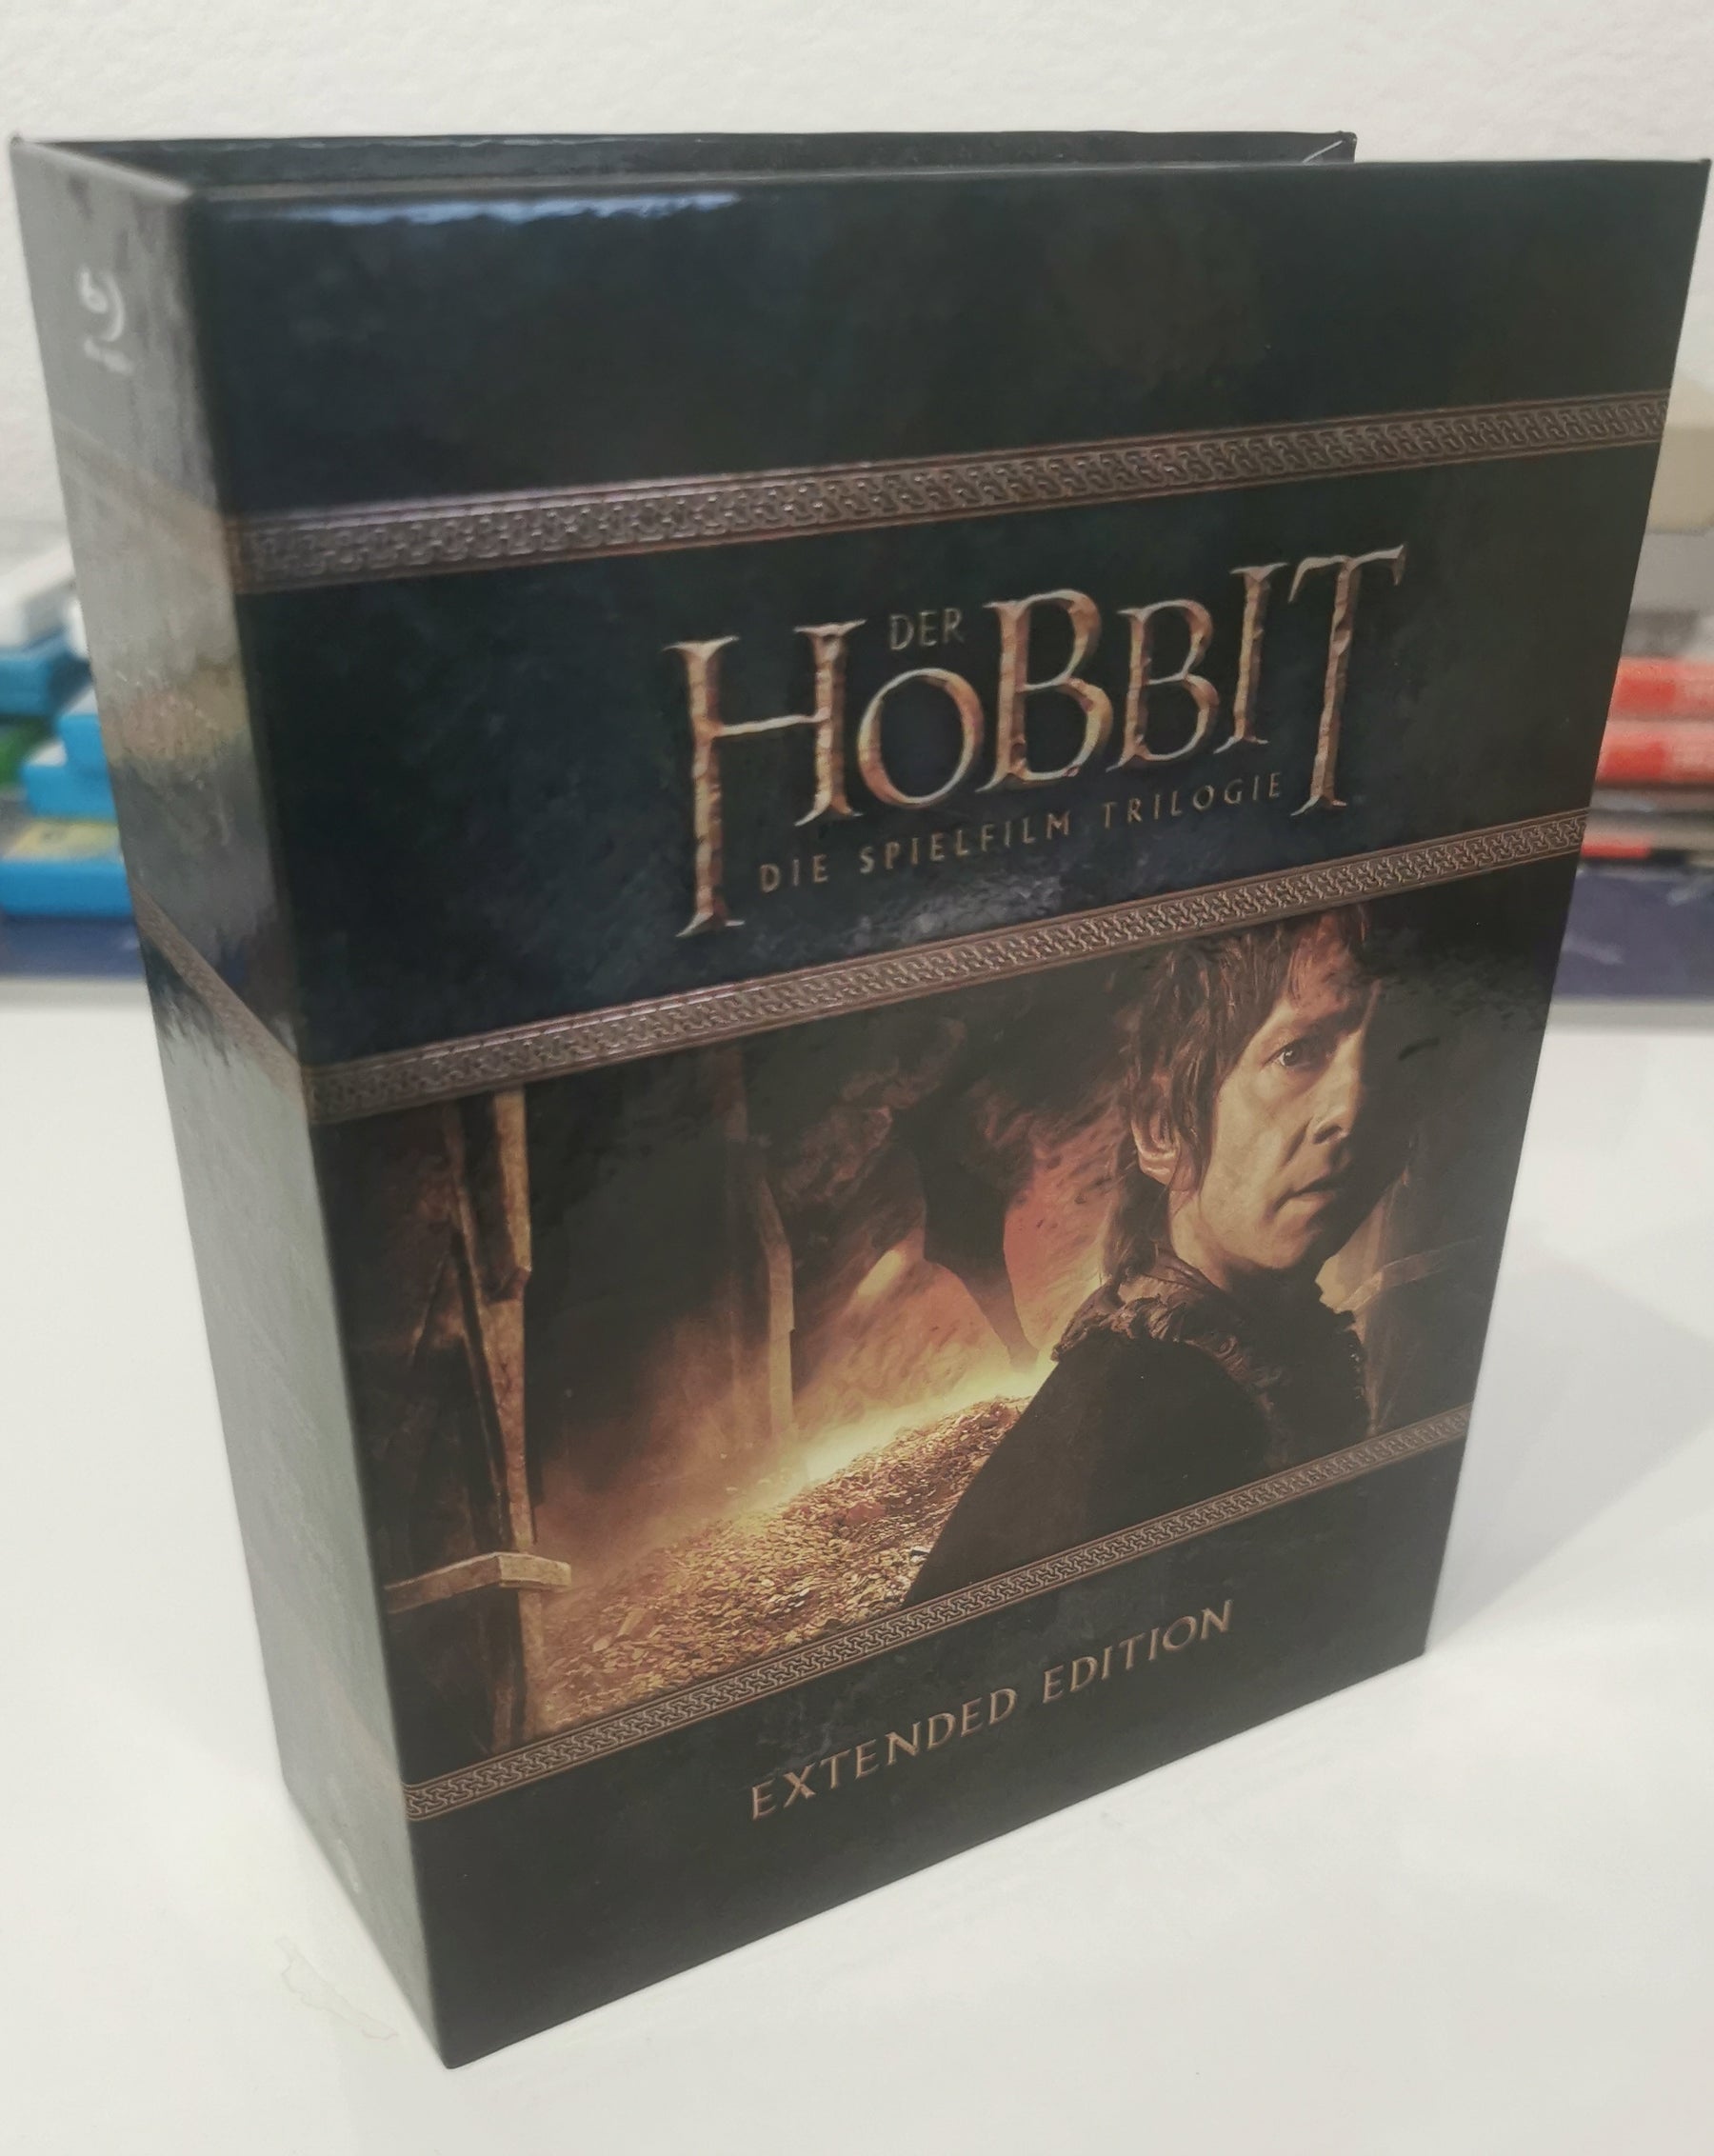 Der Hobbit Trilogie Extended Edition Bluray (Blu-ray) [Sehr Gut]